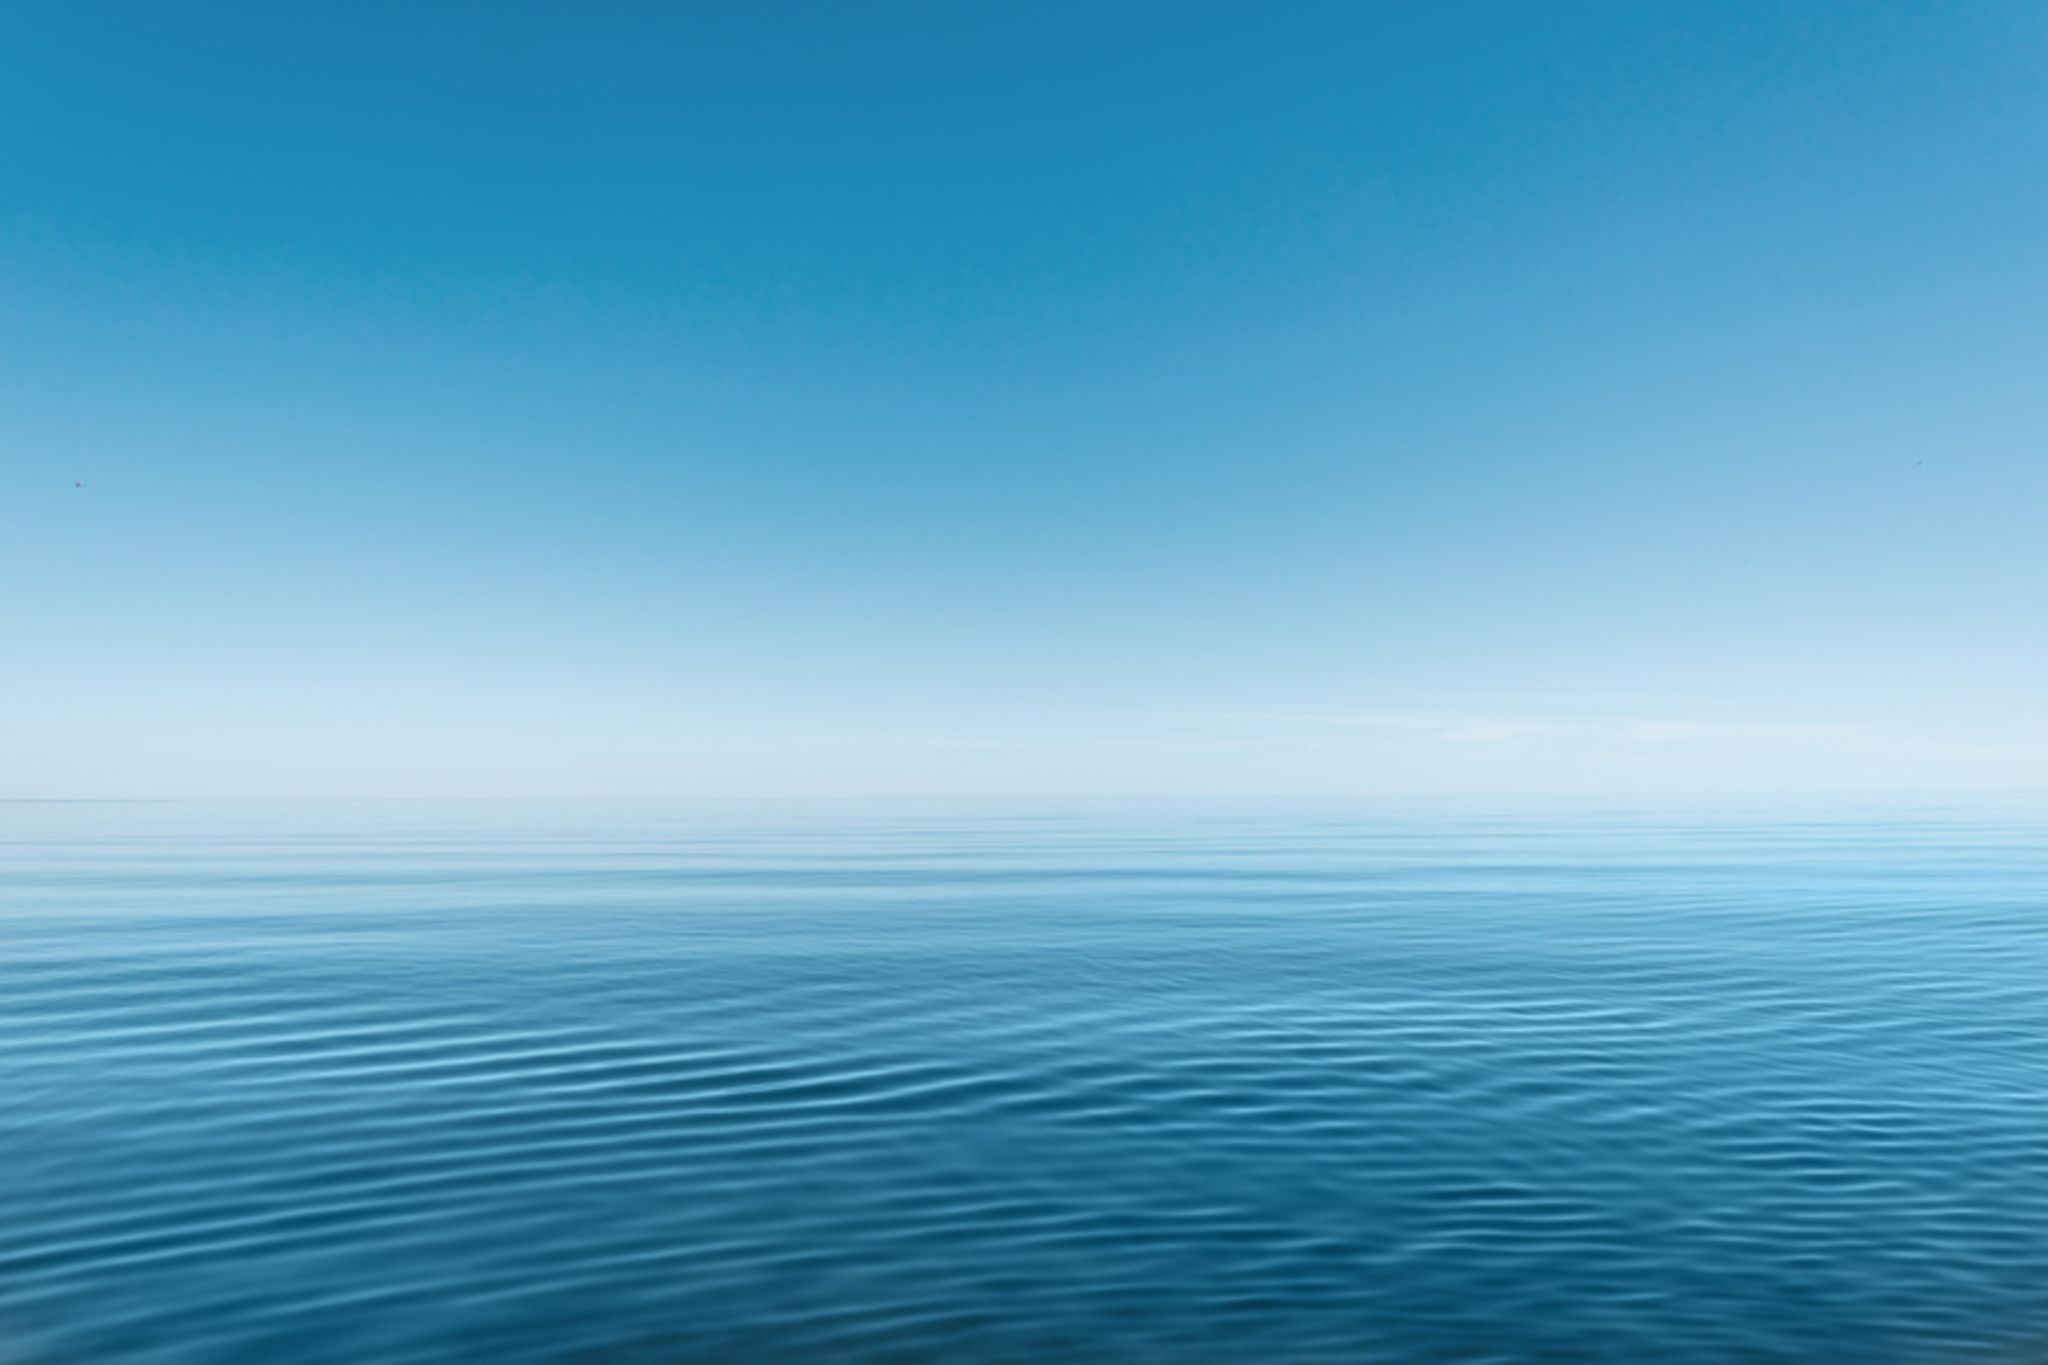 Warum das Meer wirklich blau erscheint - [GEO]